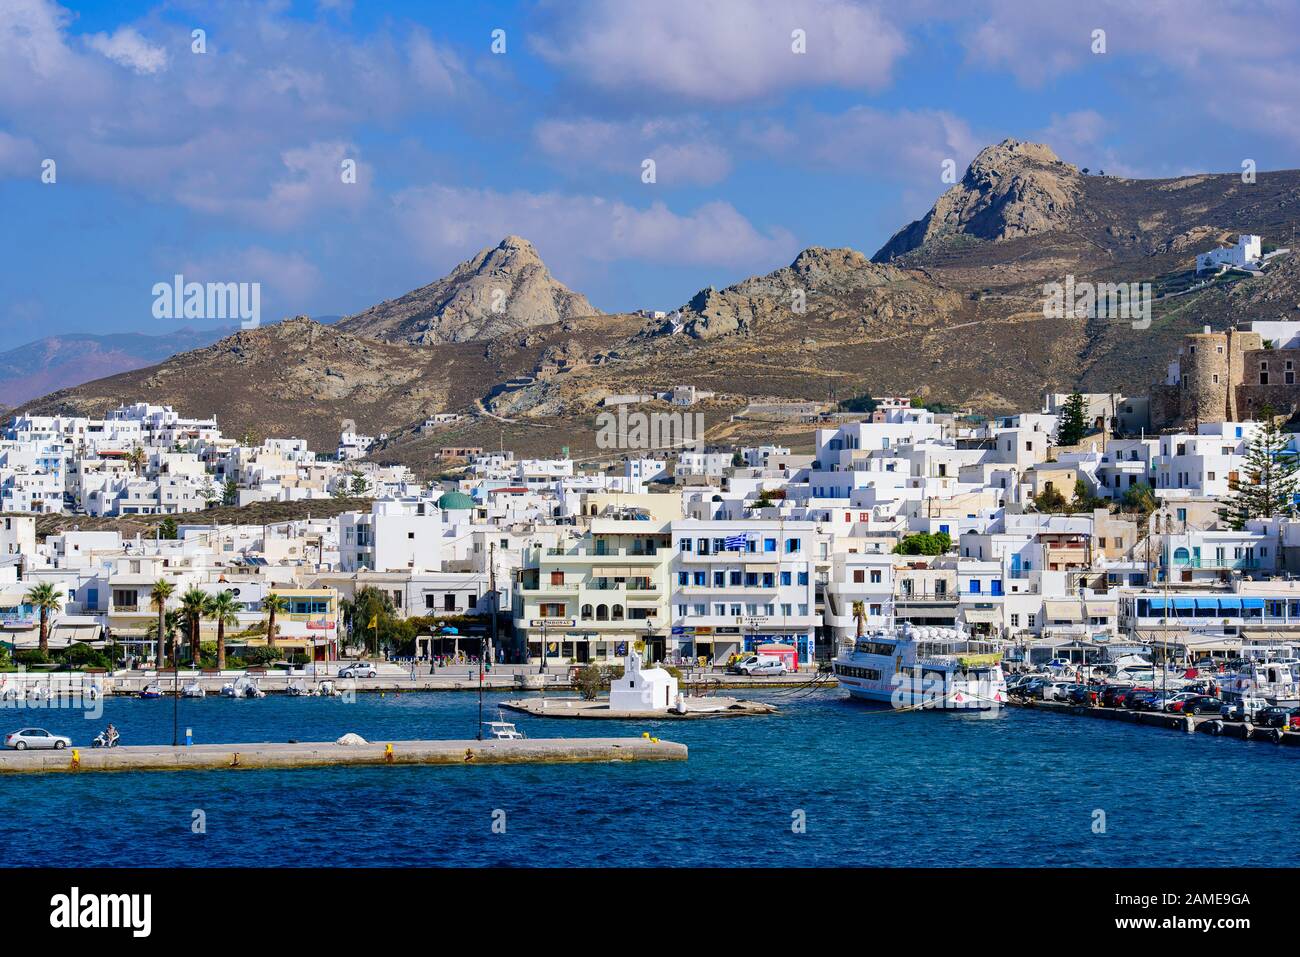 Port de Naxos, une île grecque dans la mer Egée, Grèce Banque D'Images